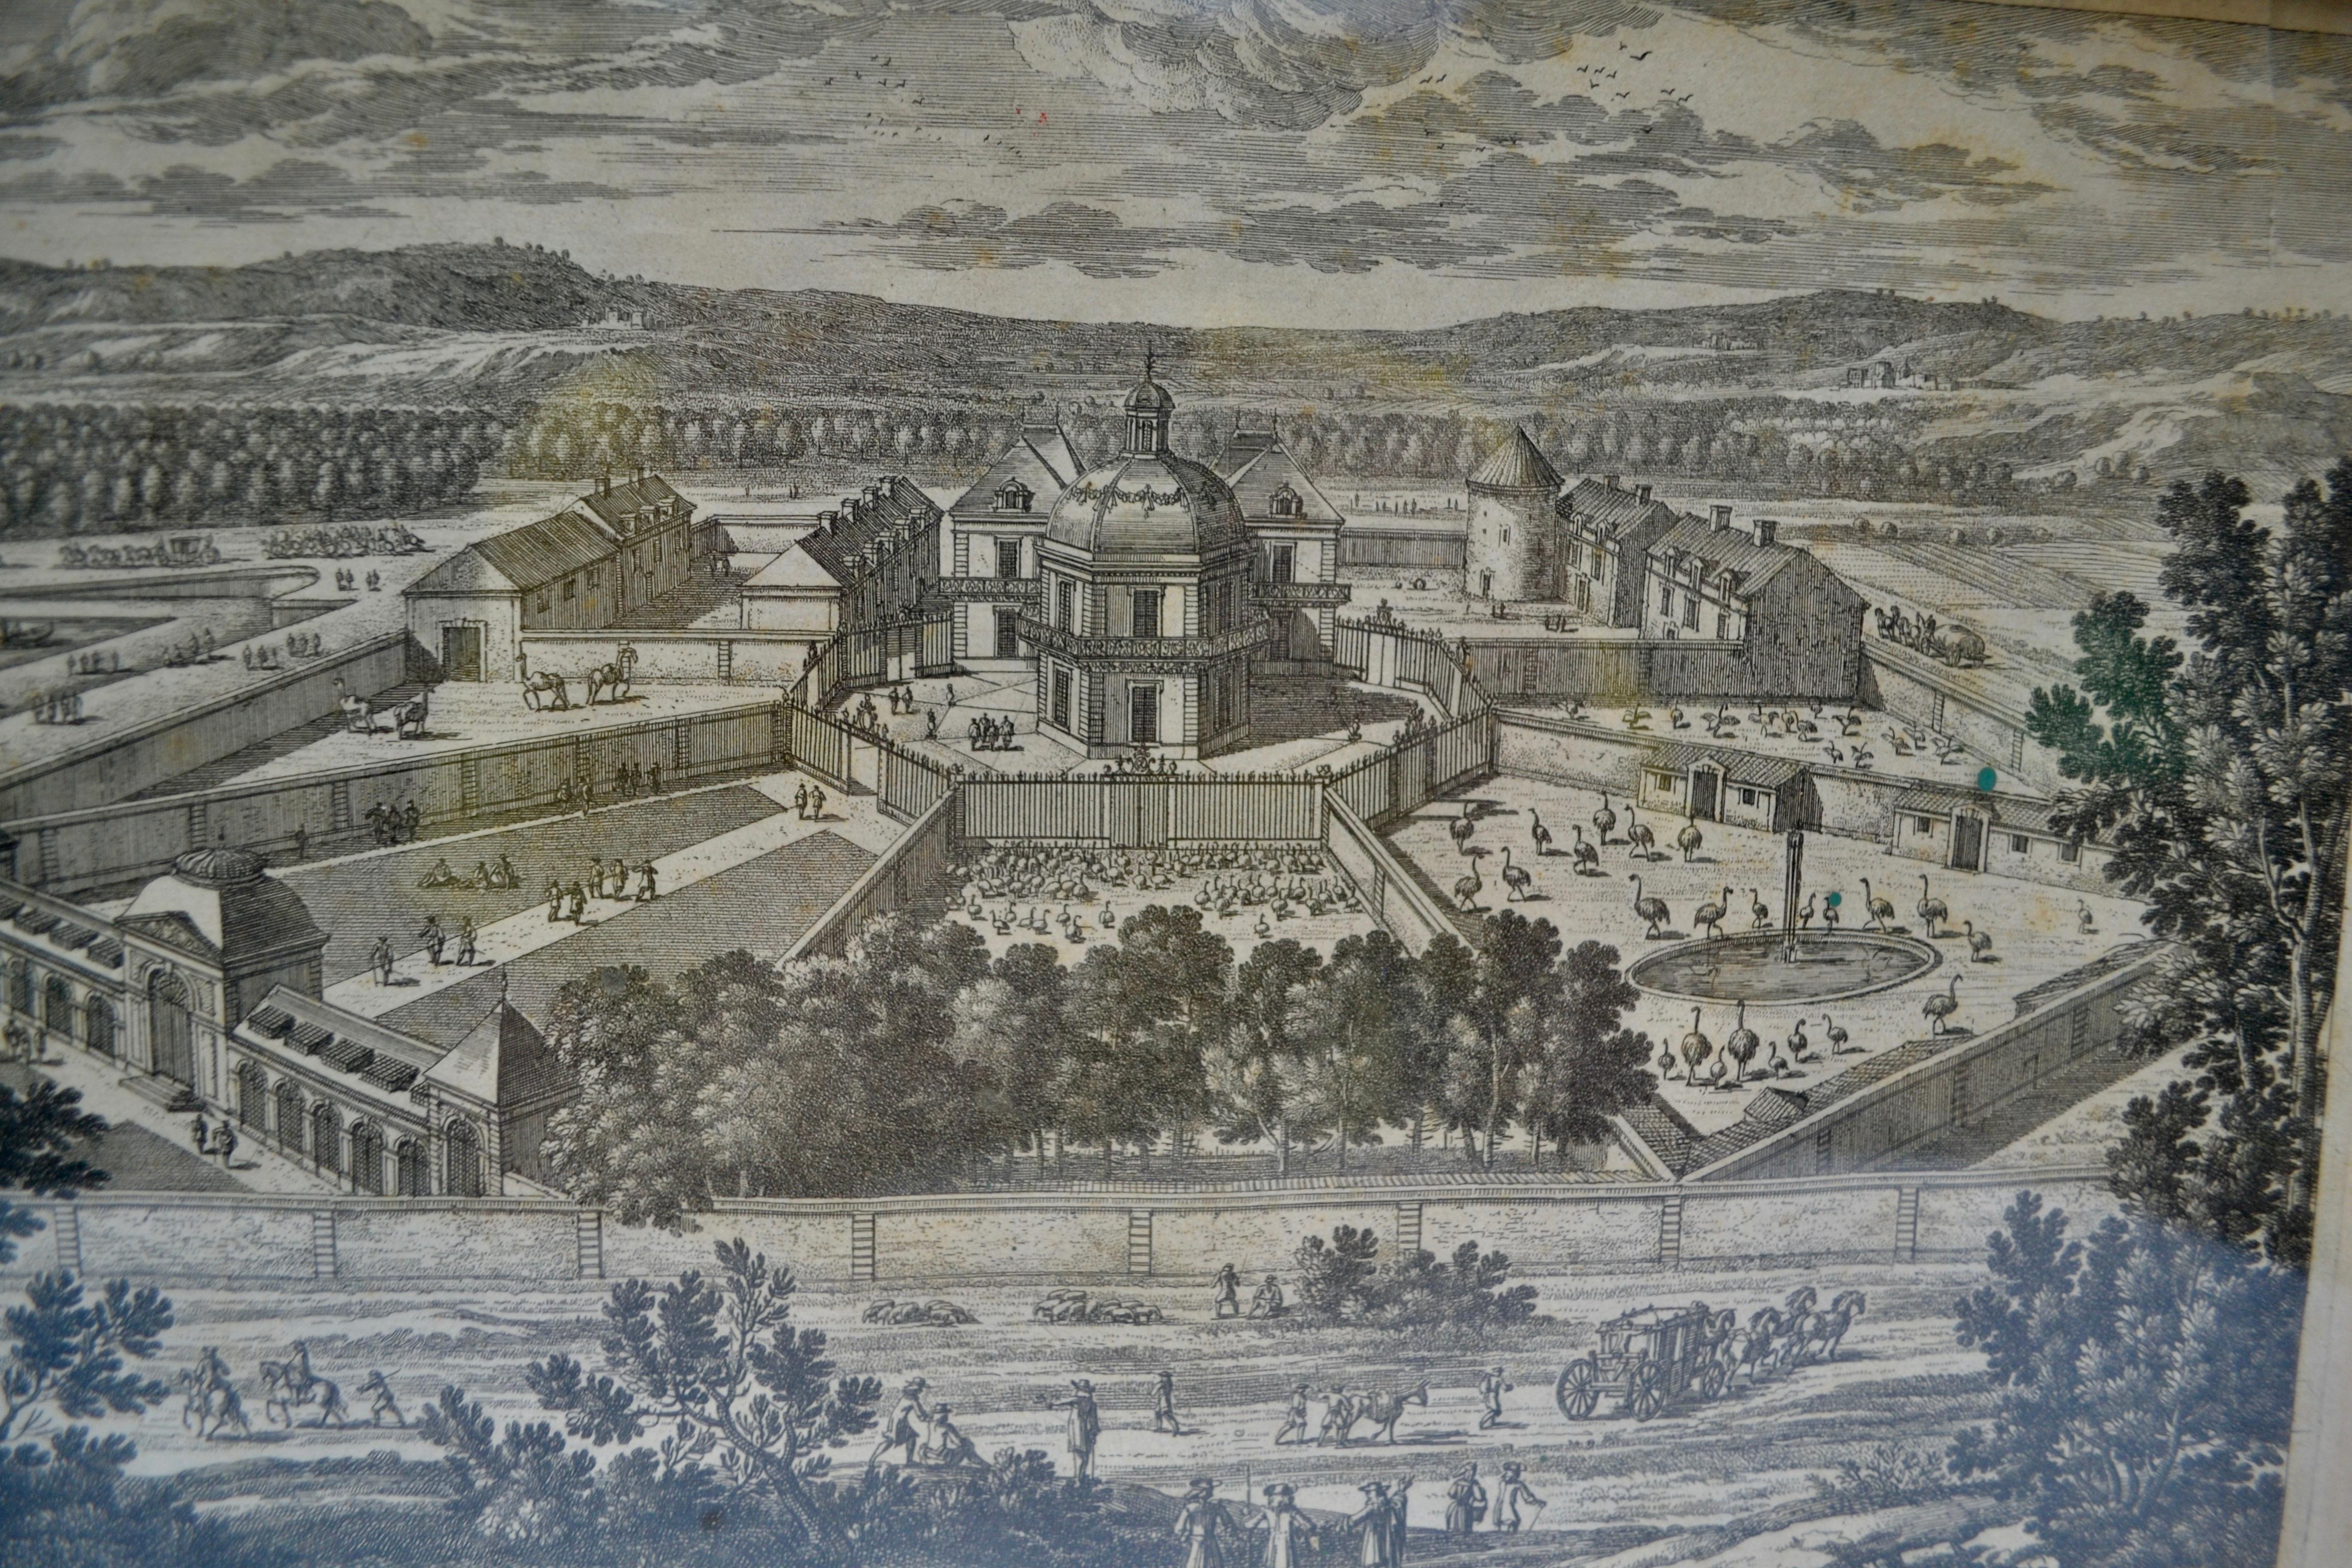 Ein seltener perspektivischer Stich aus dem 18. Jahrhundert, der den Salon de la Menagerie in Versailles zeigt und Antoine Aveline zugeschrieben wird. Er wurde in Paris von Nicolas Langlois vertrieben und mit der Erlaubnis des französischen Königs